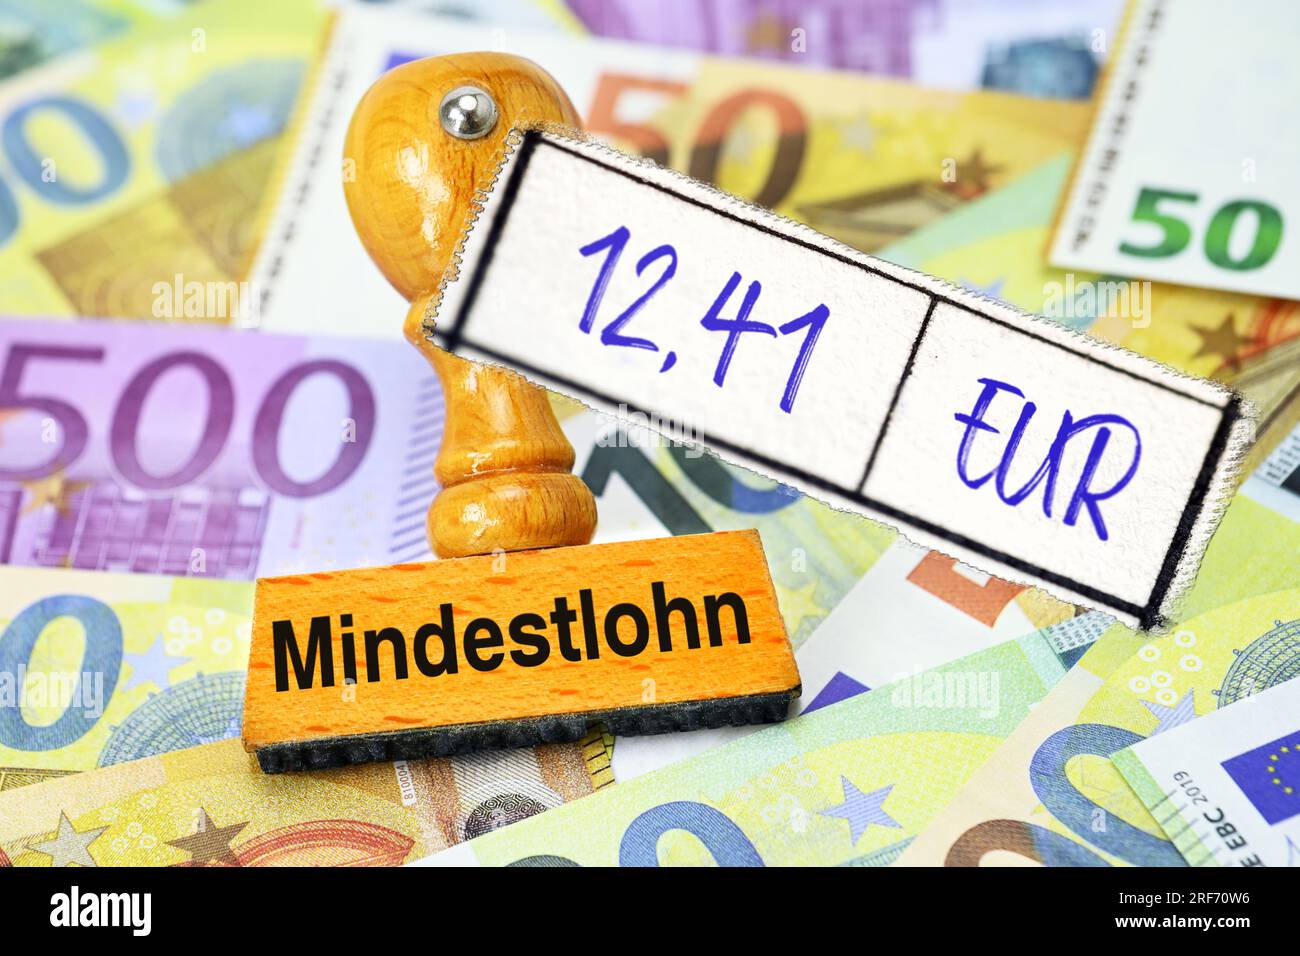 FOTOMONTAGE, Stempel mit Aufschrift Mindestlohn und Zettel mit Aufschrift 12,41 EUR auf Geldscheinen Stock Photo